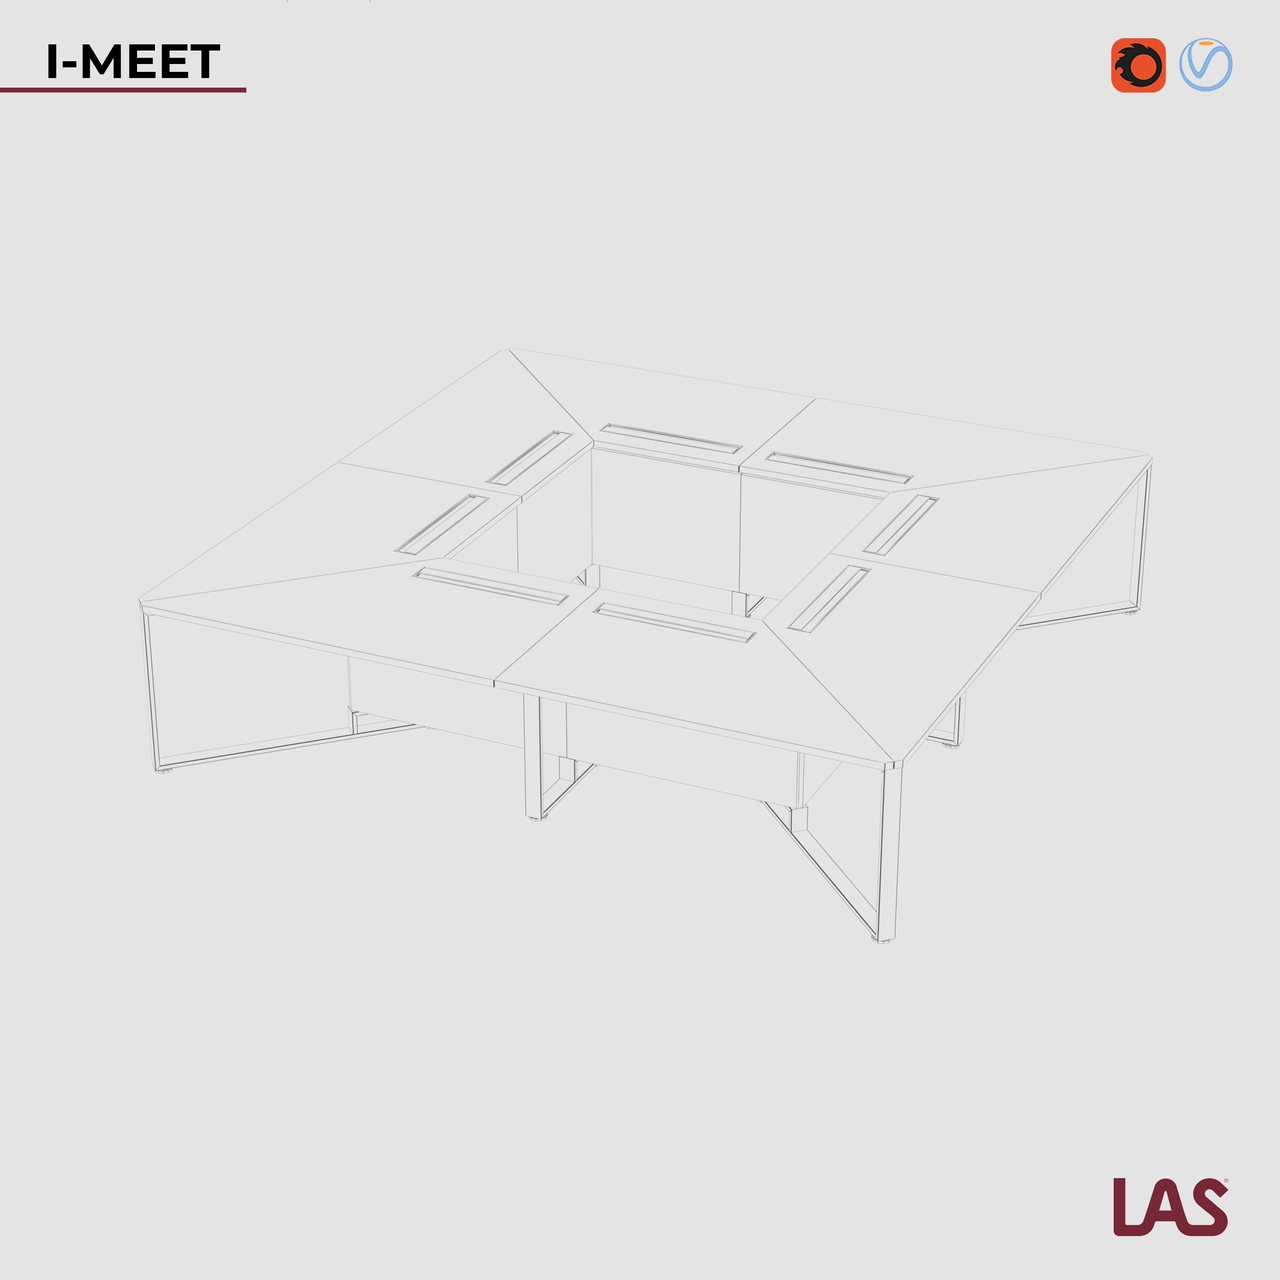 Превью G 3D-модели большого переговорного стола на 16 человек LAS I-Meet 146656